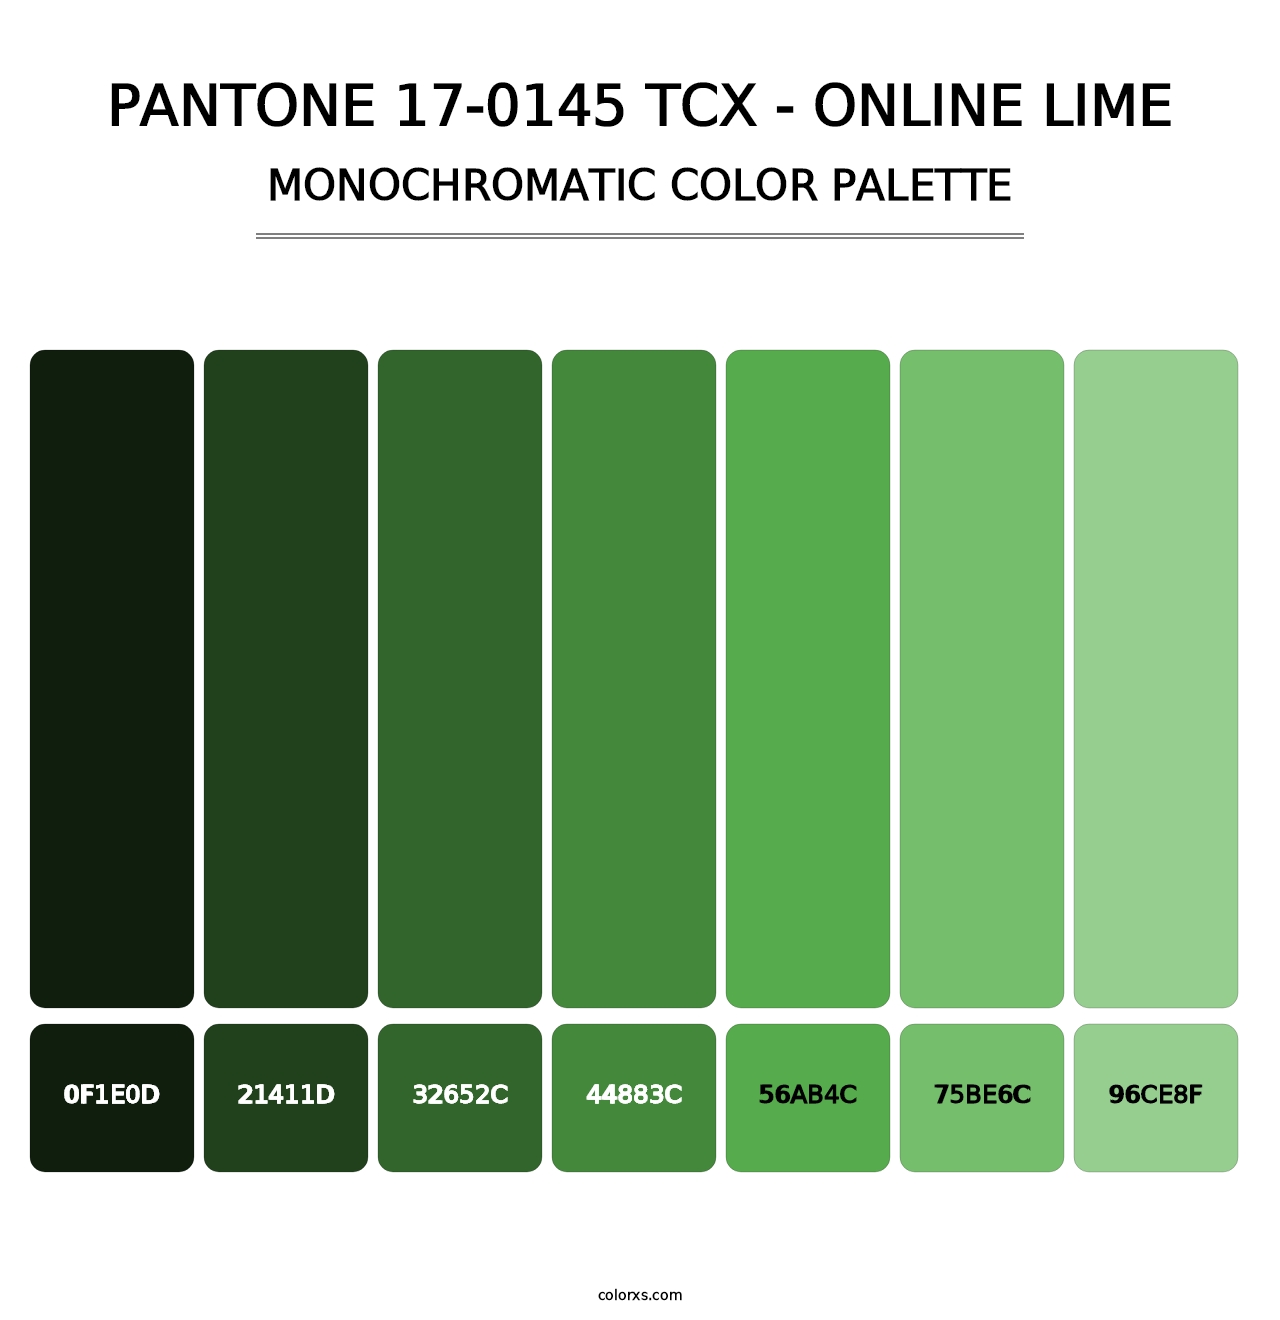 PANTONE 17-0145 TCX - Online Lime - Monochromatic Color Palette